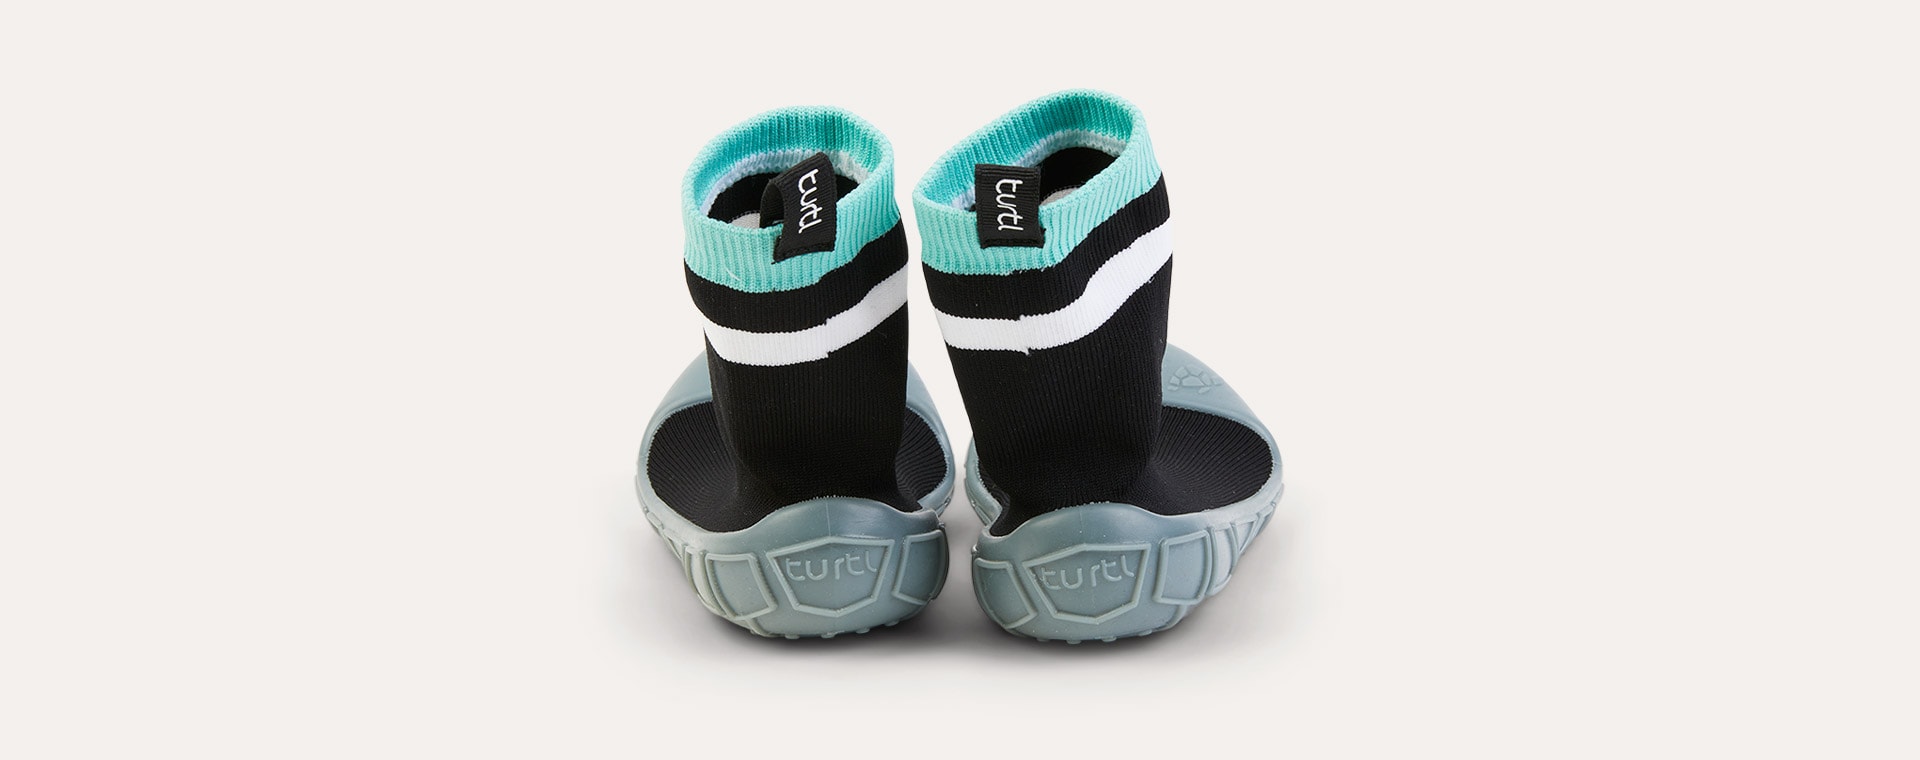 New Black turtl Kids Slipper Socks